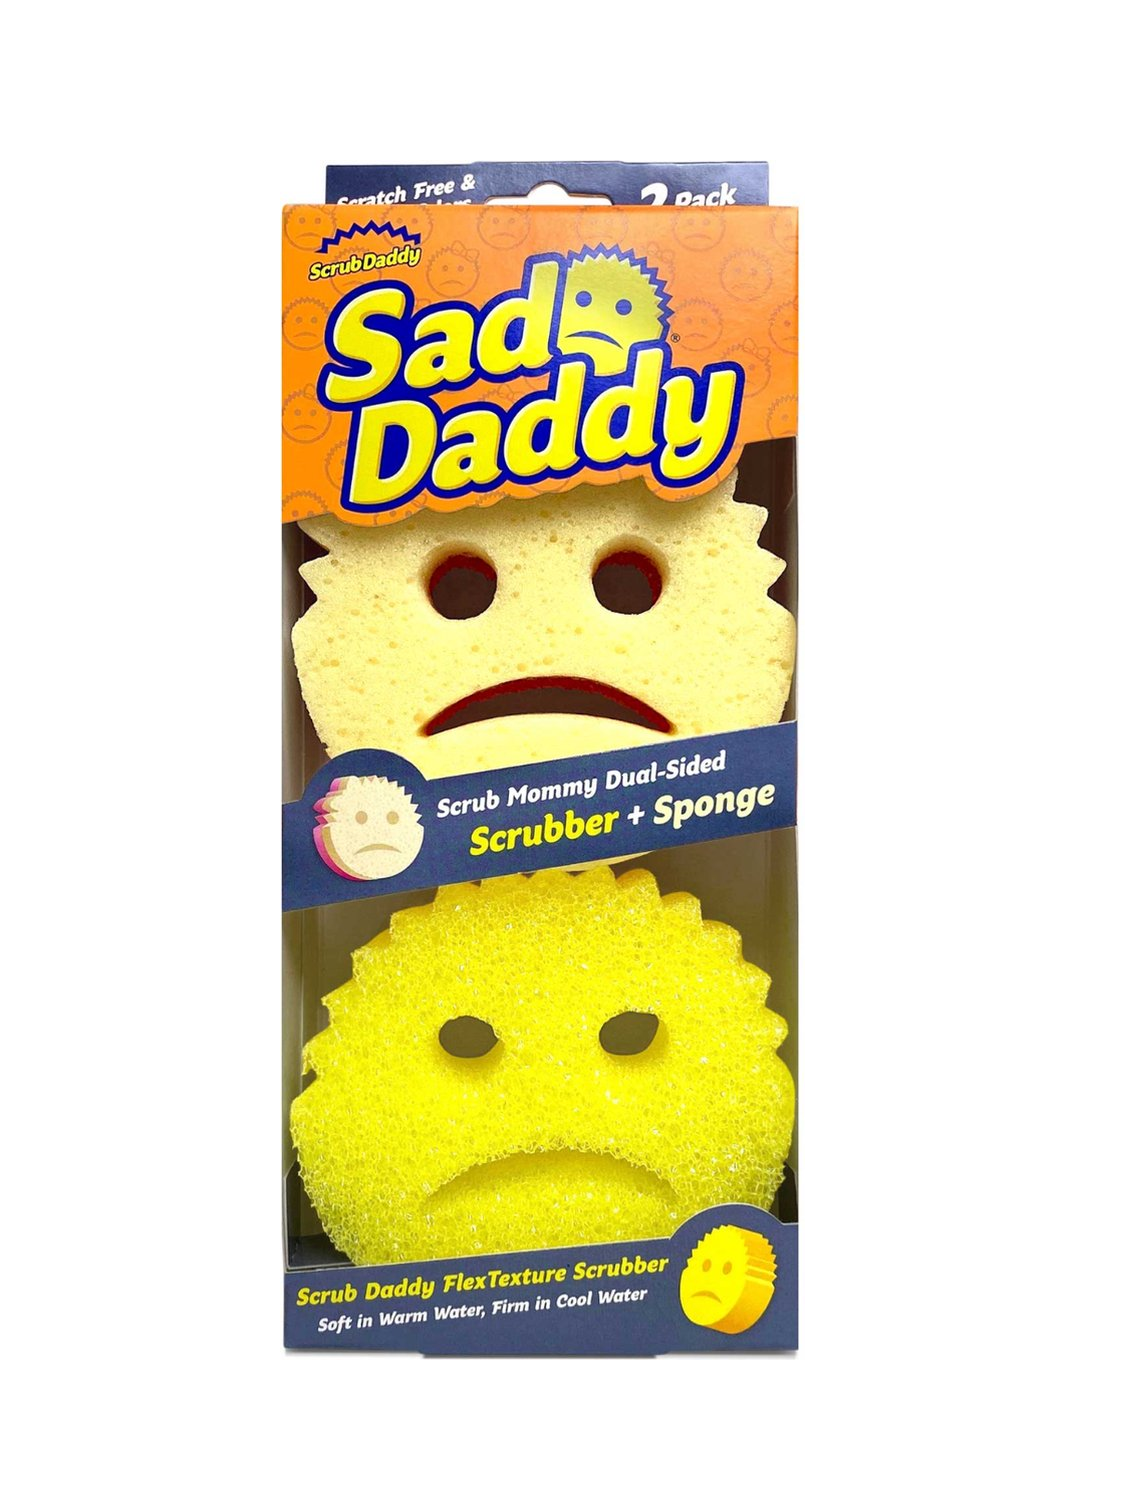 Sad Daddy - Scrub Daddy - Scrub Mommy – The Pink Stuff